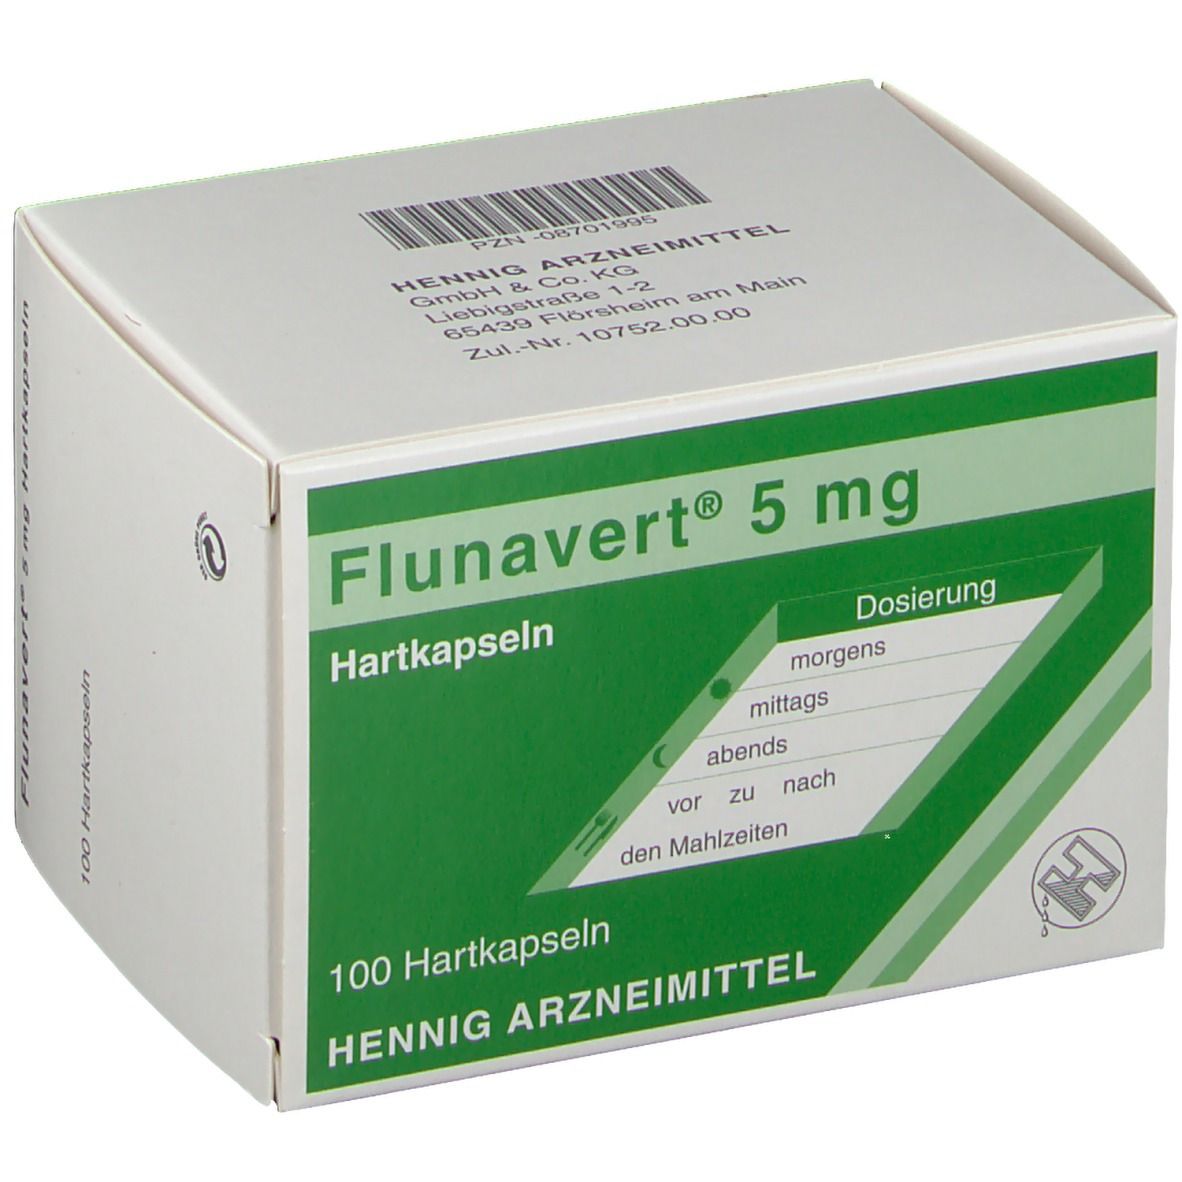 Flunavert® 5 mg